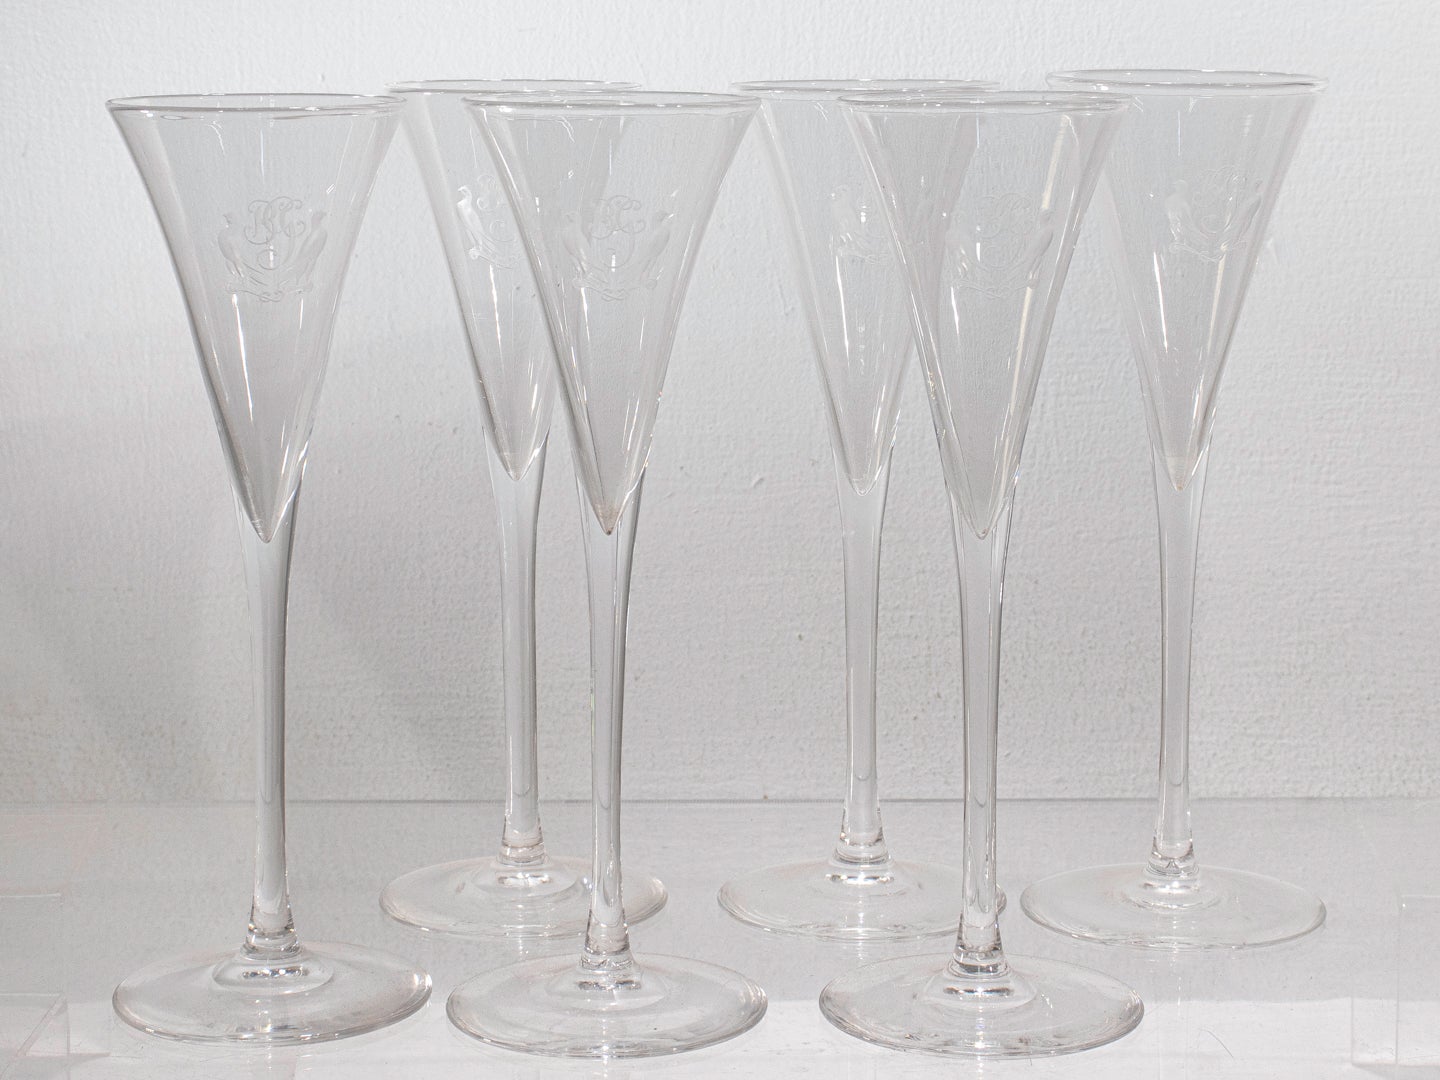 Ein feines Set von 6 Champagnerflöten oder -stielen aus Kristallglas.

Von Steuben.

Mit einem Paar Vögel im Radschnitt, die ein kursives Monogramm mit der Aufschrift BCG